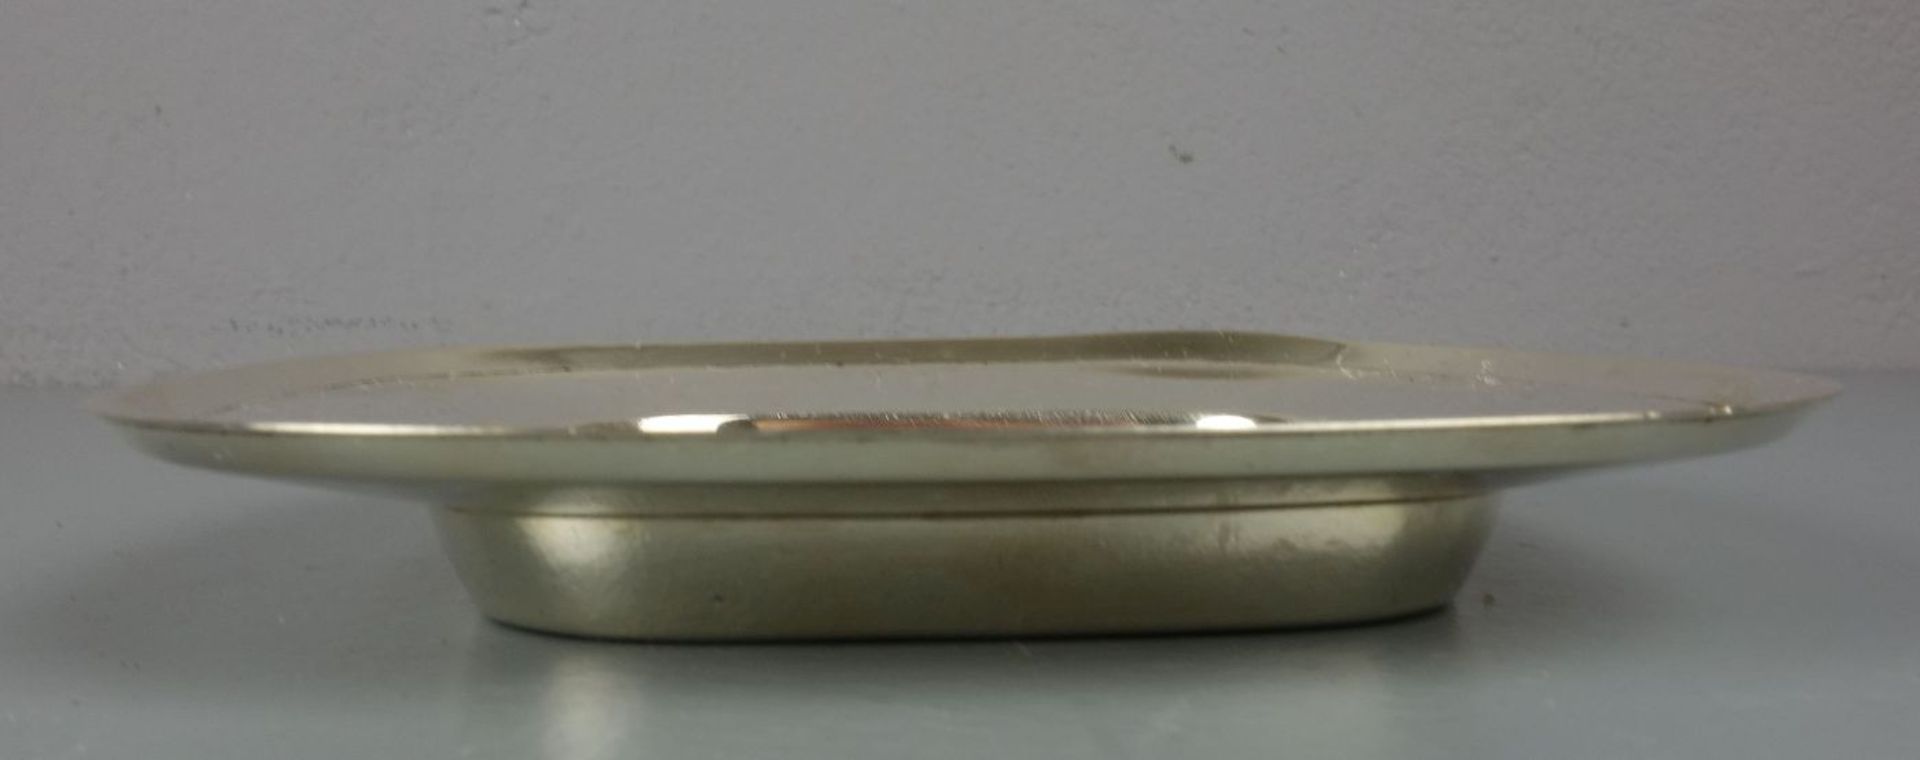 SCHALE / KARREESCHALE, 925er Silber (122 g), bezeichnet "Sterling", gepunzt mit Feingehaltsangabe - Image 3 of 3